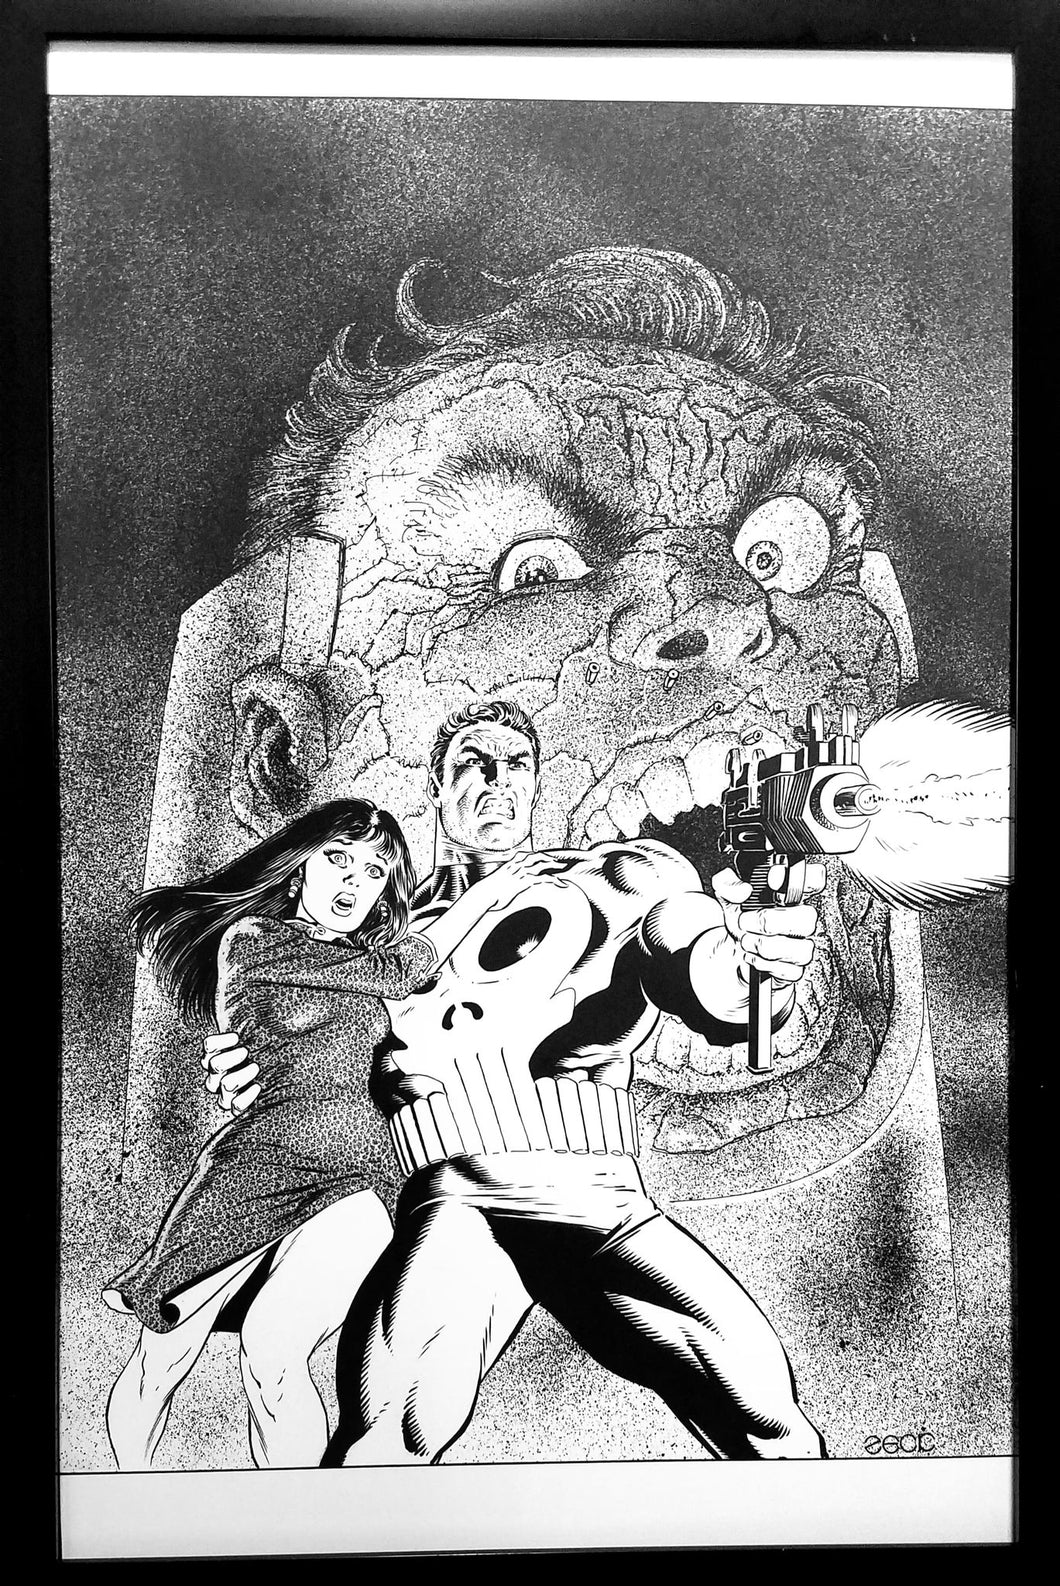 Punisher by Mike Zeck 11x17 FRAMED Original Art Poster Marvel Comics